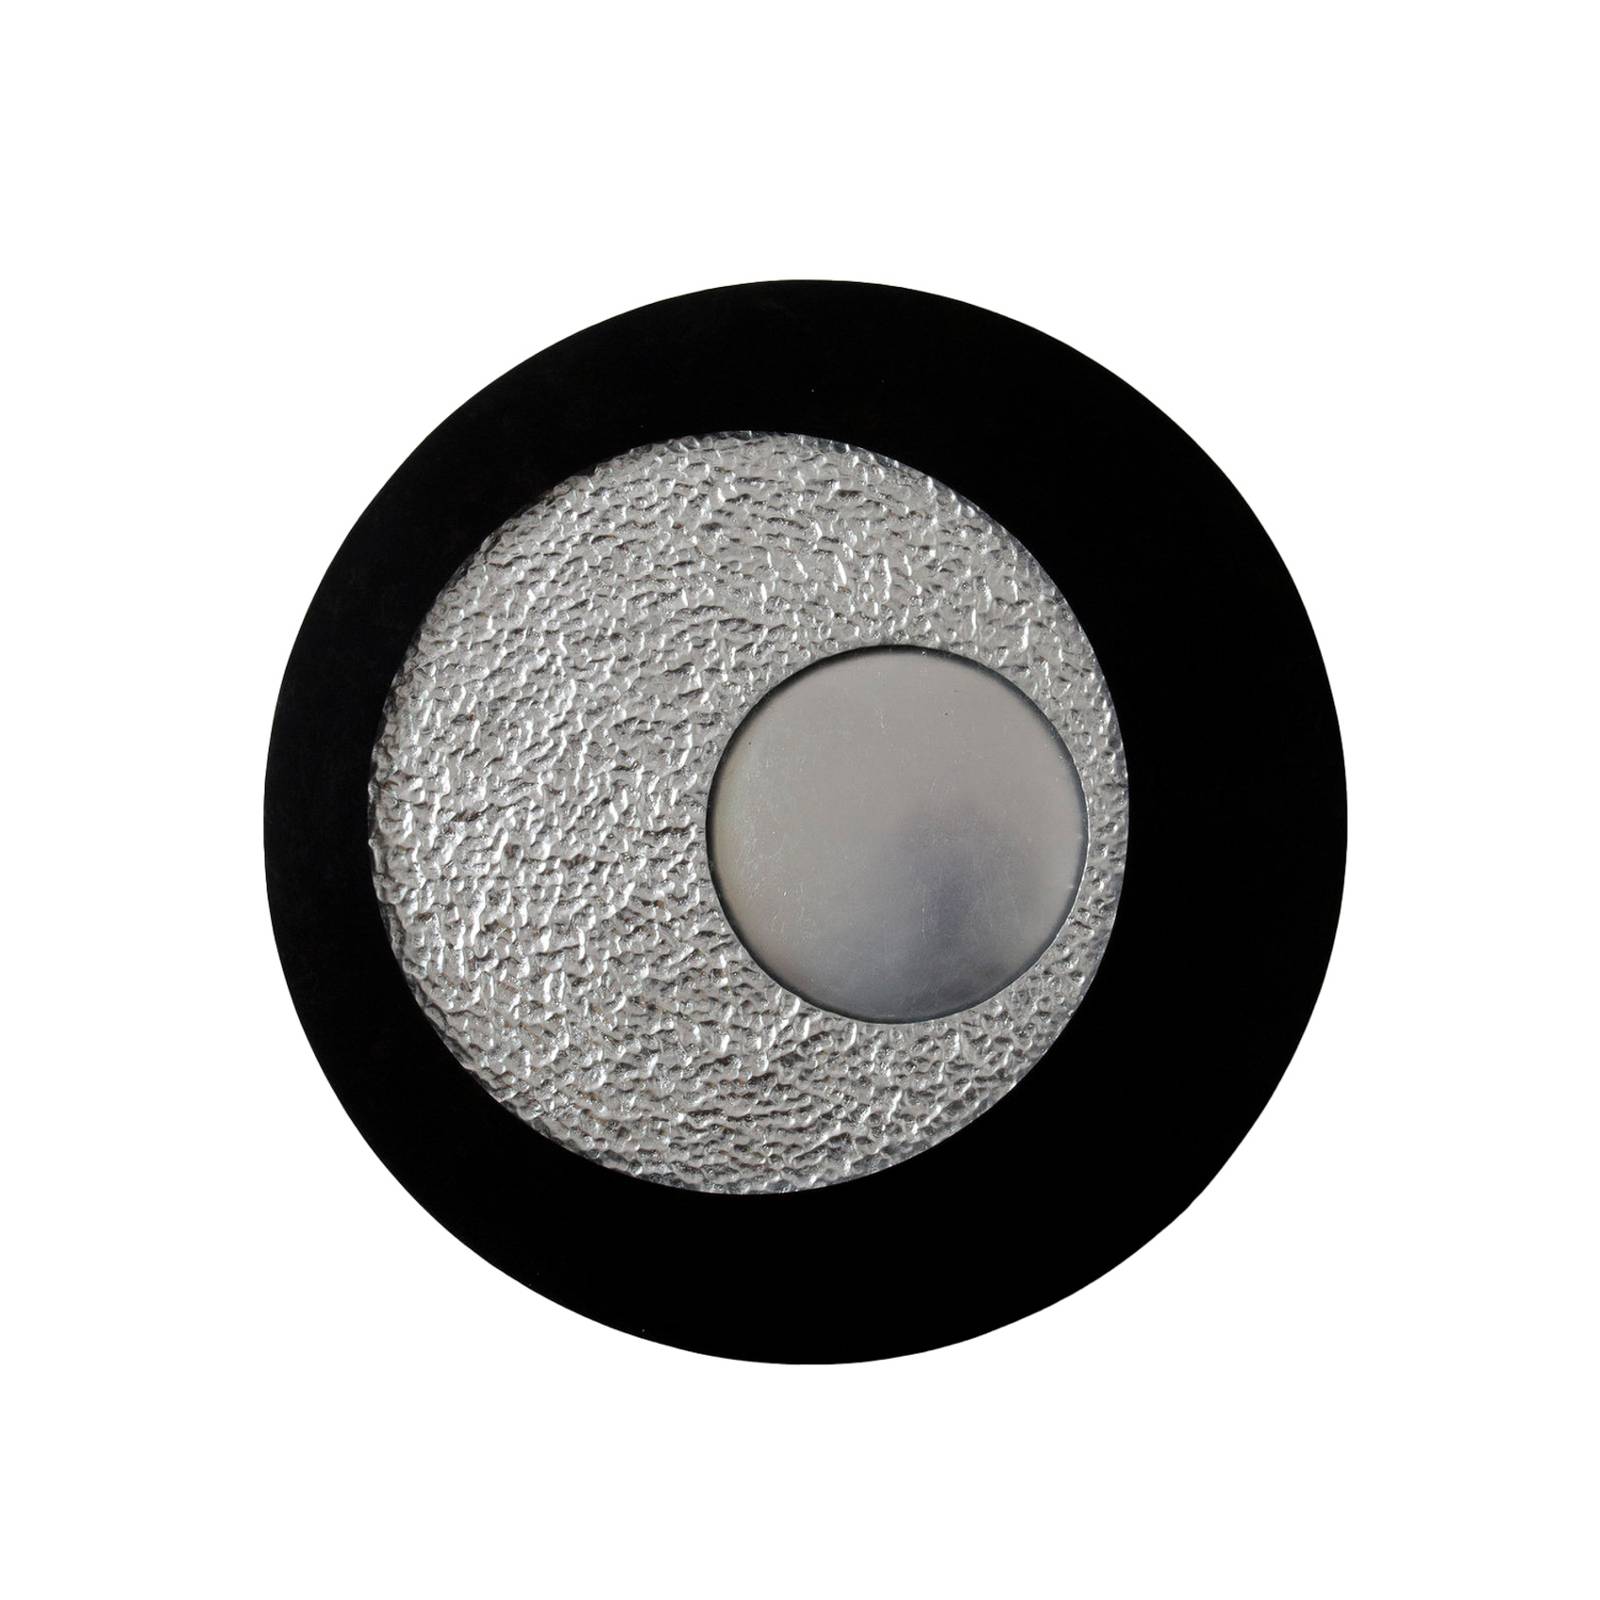 Bild von LED-Wandleuchte Urano, braun-schwarz/silber, Ø 85 cm, Eisen